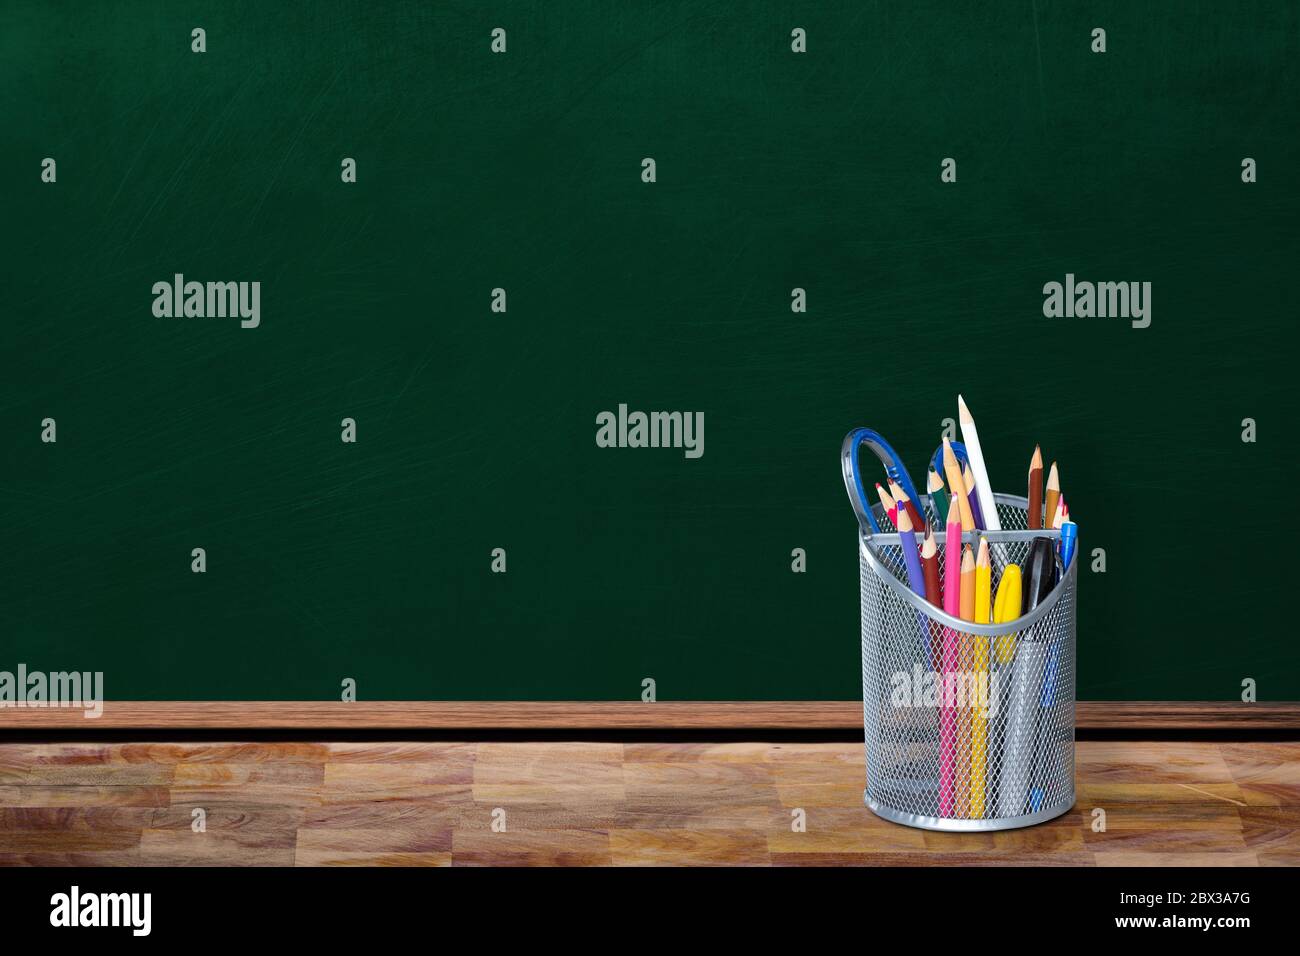 Concept de rentrée scolaire dans un environnement de classe vide avec porte-crayons et agrafs sur table avec espace pour les copies sur tableau noir. Banque D'Images